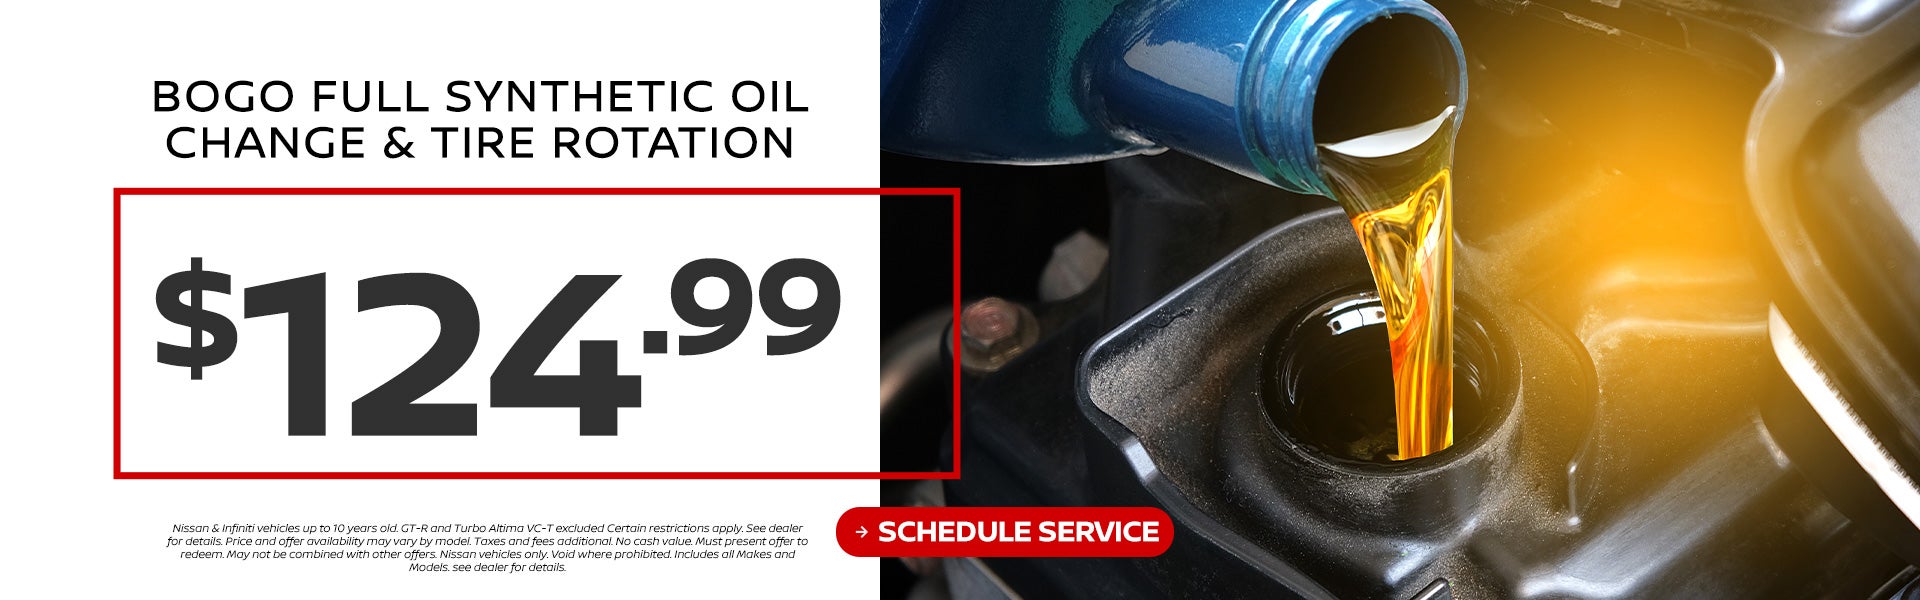 BOGO Full Synthetic Oil Change & Tire Rotation $124.99